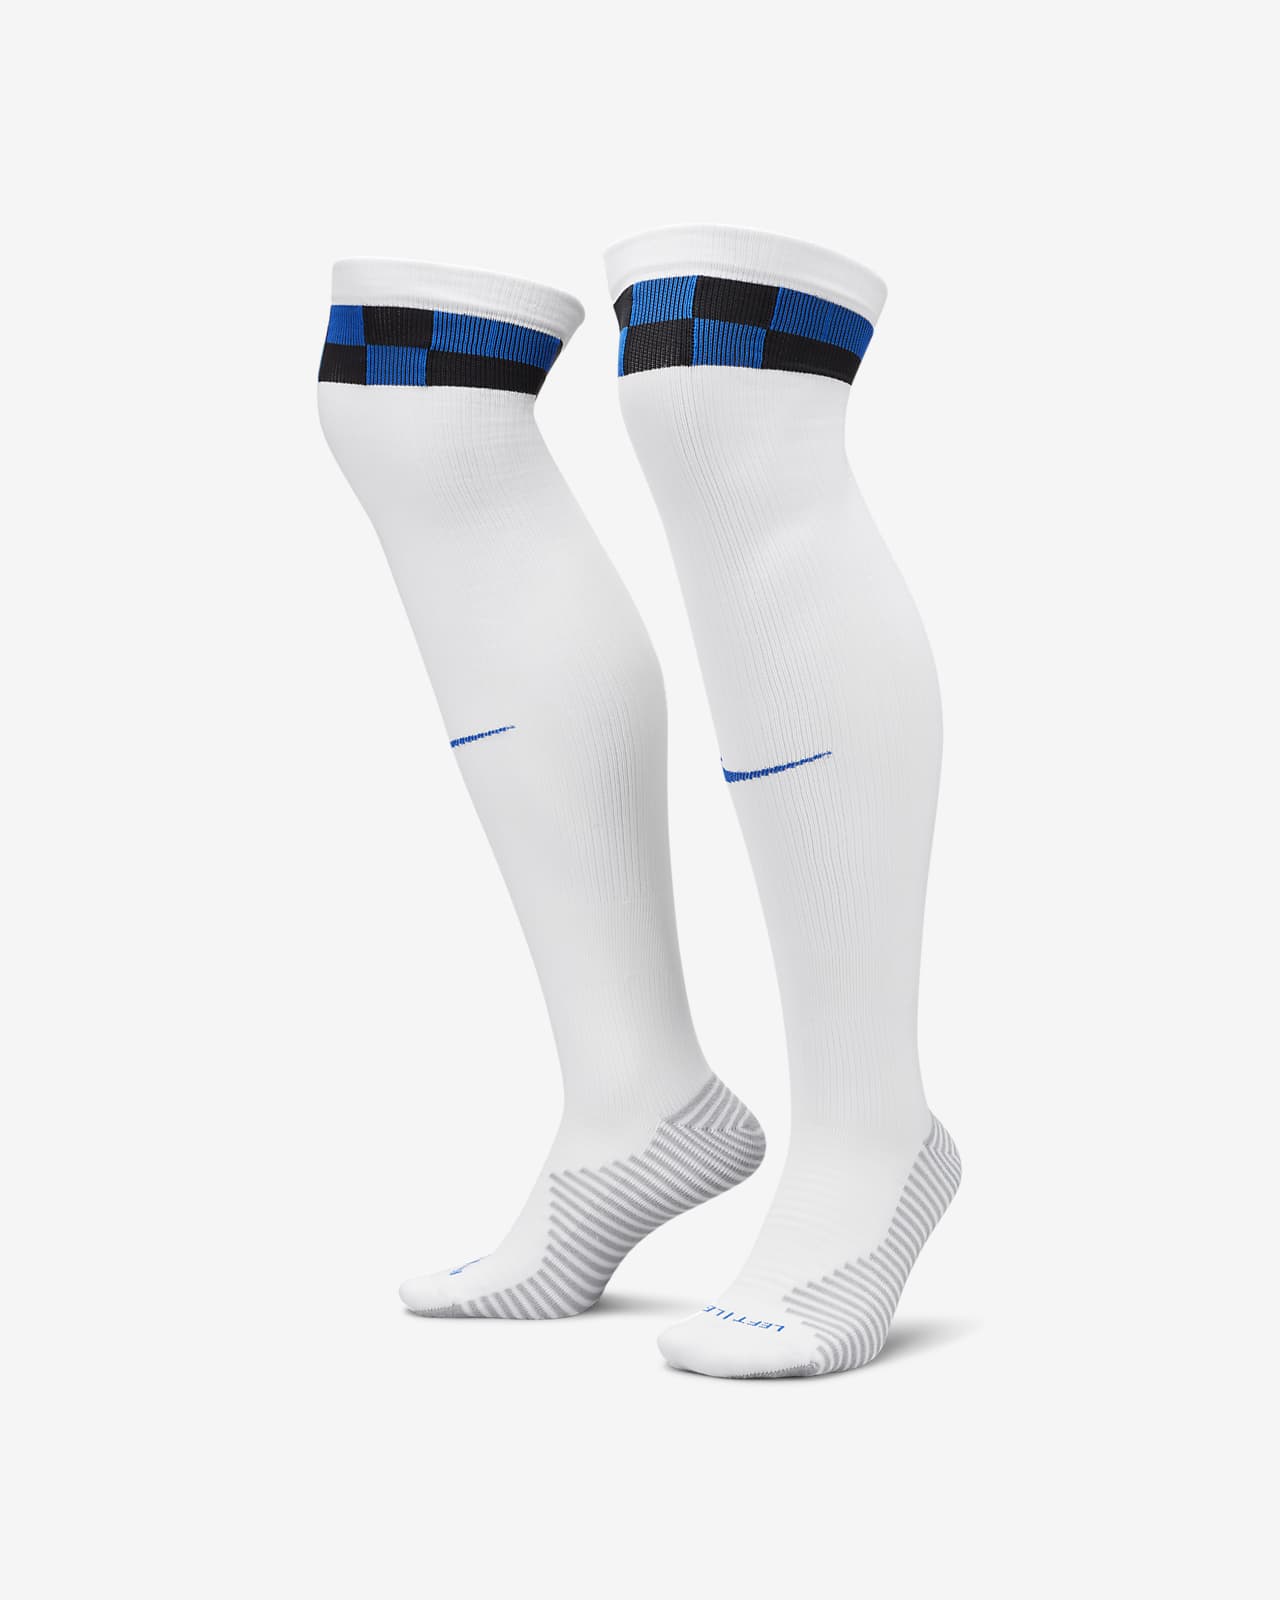 Ποδοσφαιρικές κάλτσες μέχρι το γόνατο εντός/εκτός έδρας Ίντερ Strike